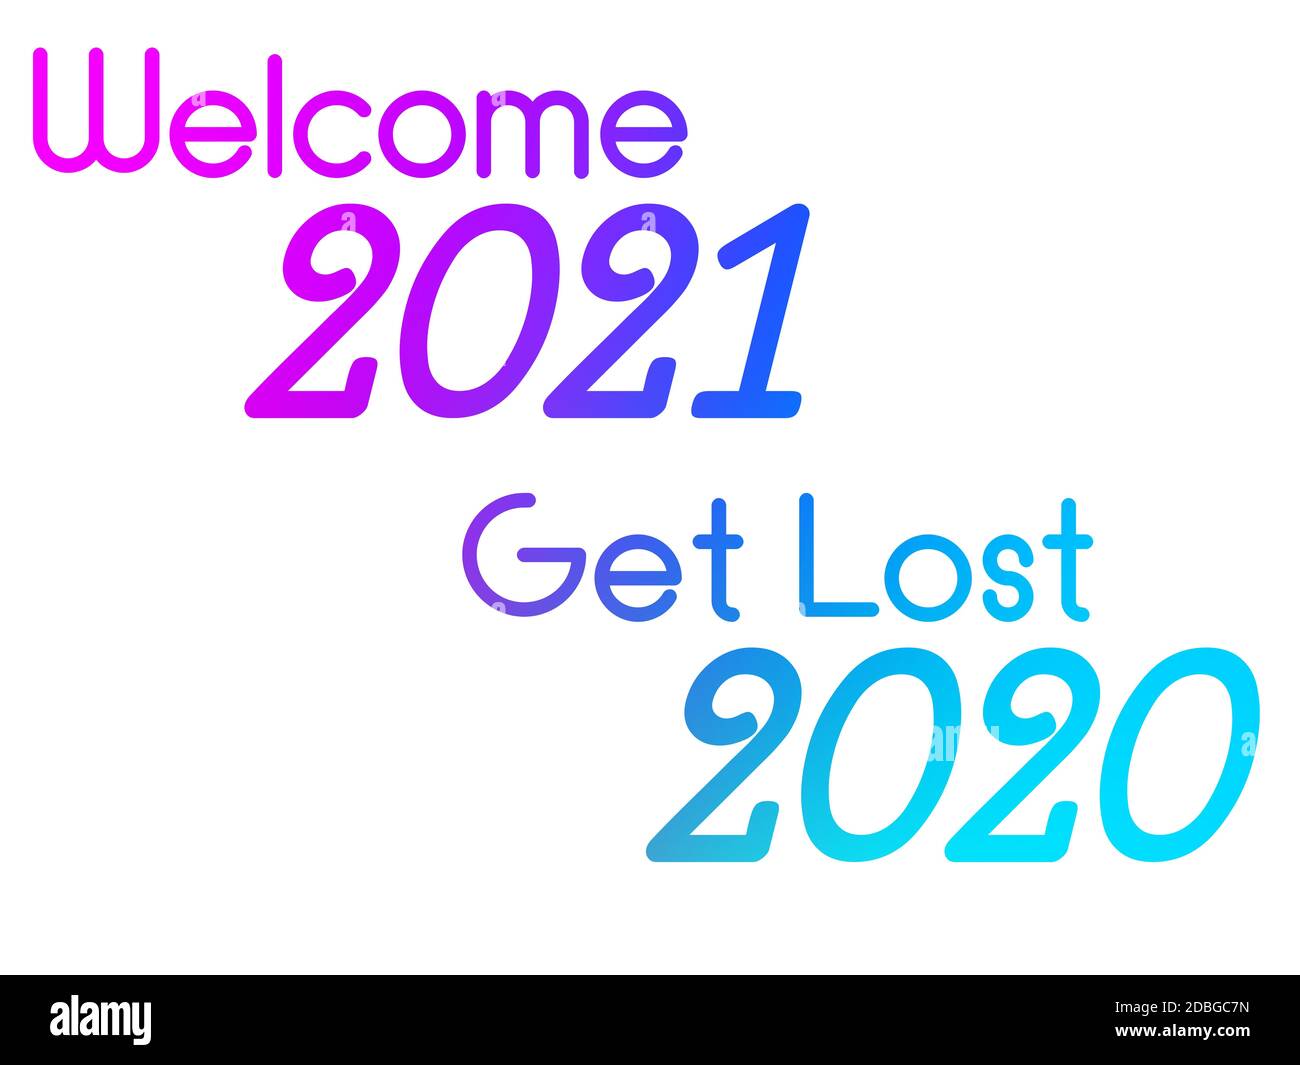 Eine farbenfrohe Illustration eines glücklichen neuen Jahres mit Phase Welcome 2021 Get Lost 2020. Stockfoto